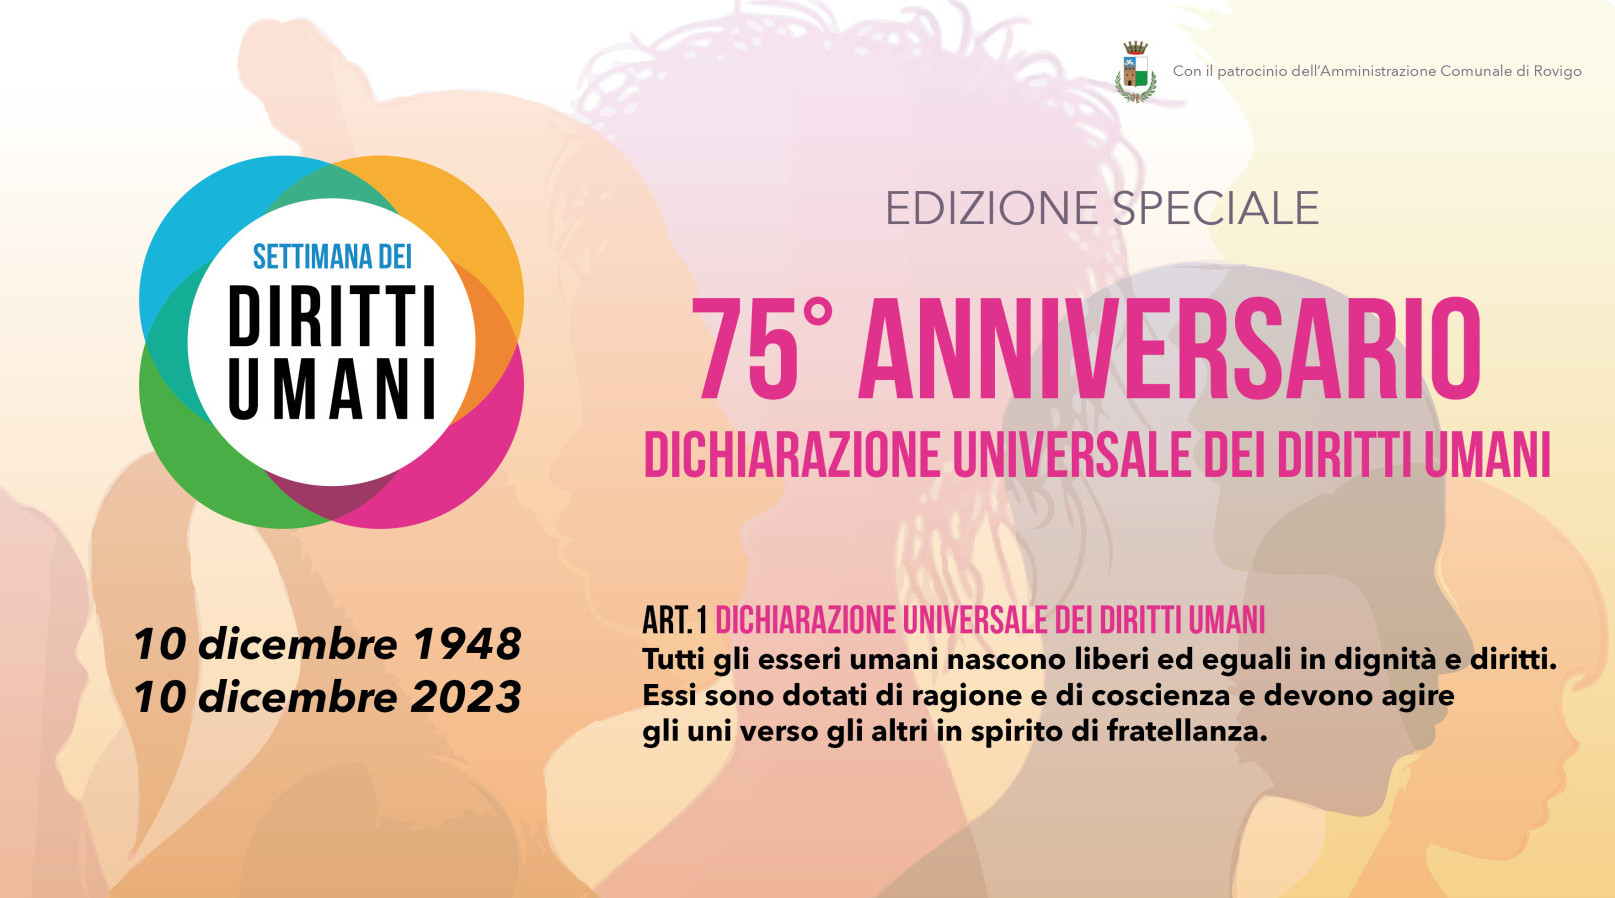 SETTIMANA DEI DIRITTI UMANI. Torna con edizione speciale per il 75° anniversario della Dichiarazione Universale